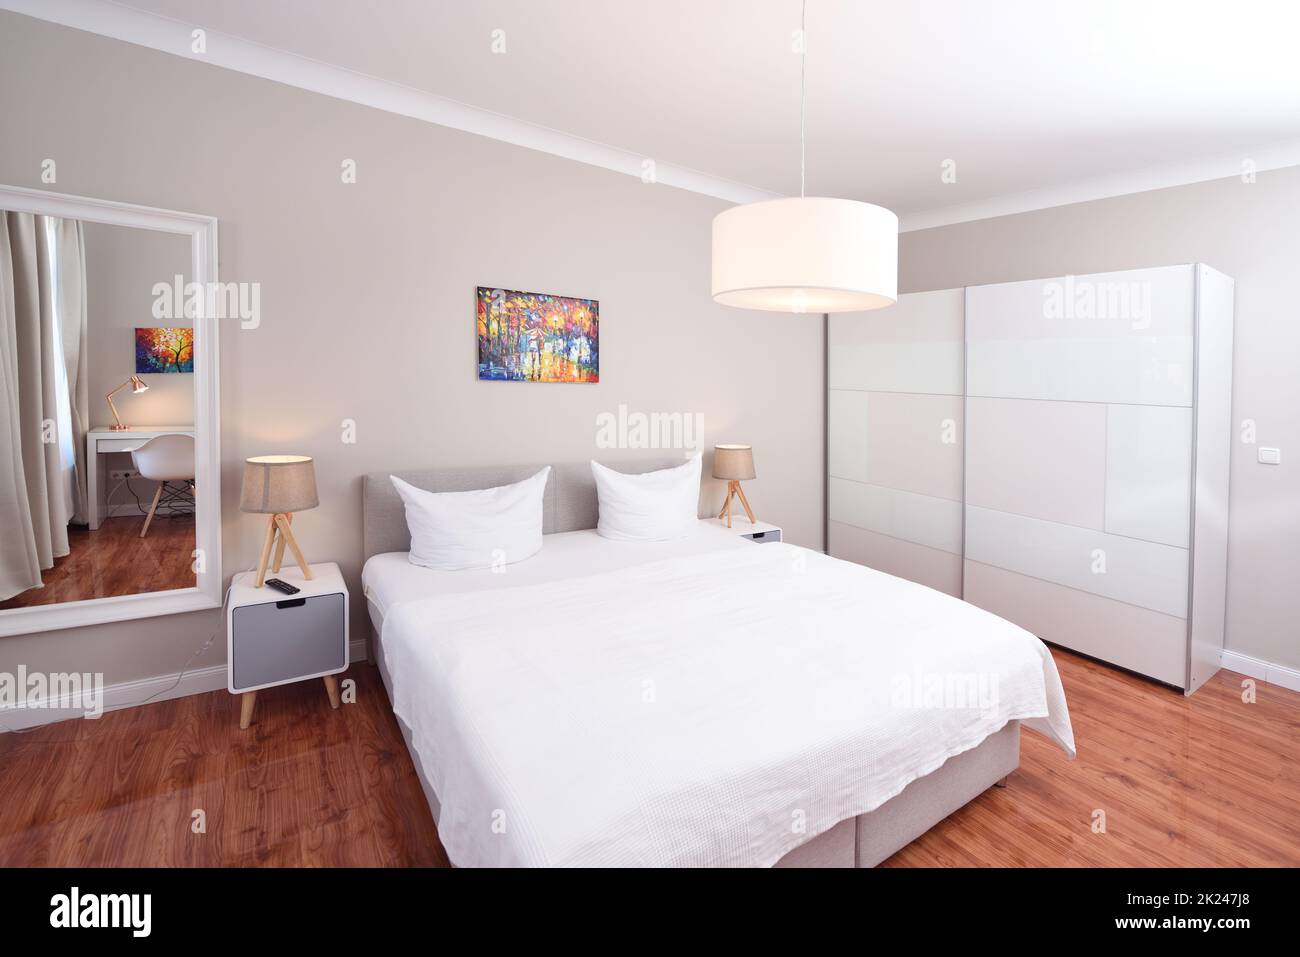 Heim Schlafzimmer Innenraum weißes Bett Holzboden Tür zum Flur buntes Bild zwei Lampen und Kissen, Spiegel Schreibtisch Stockfoto